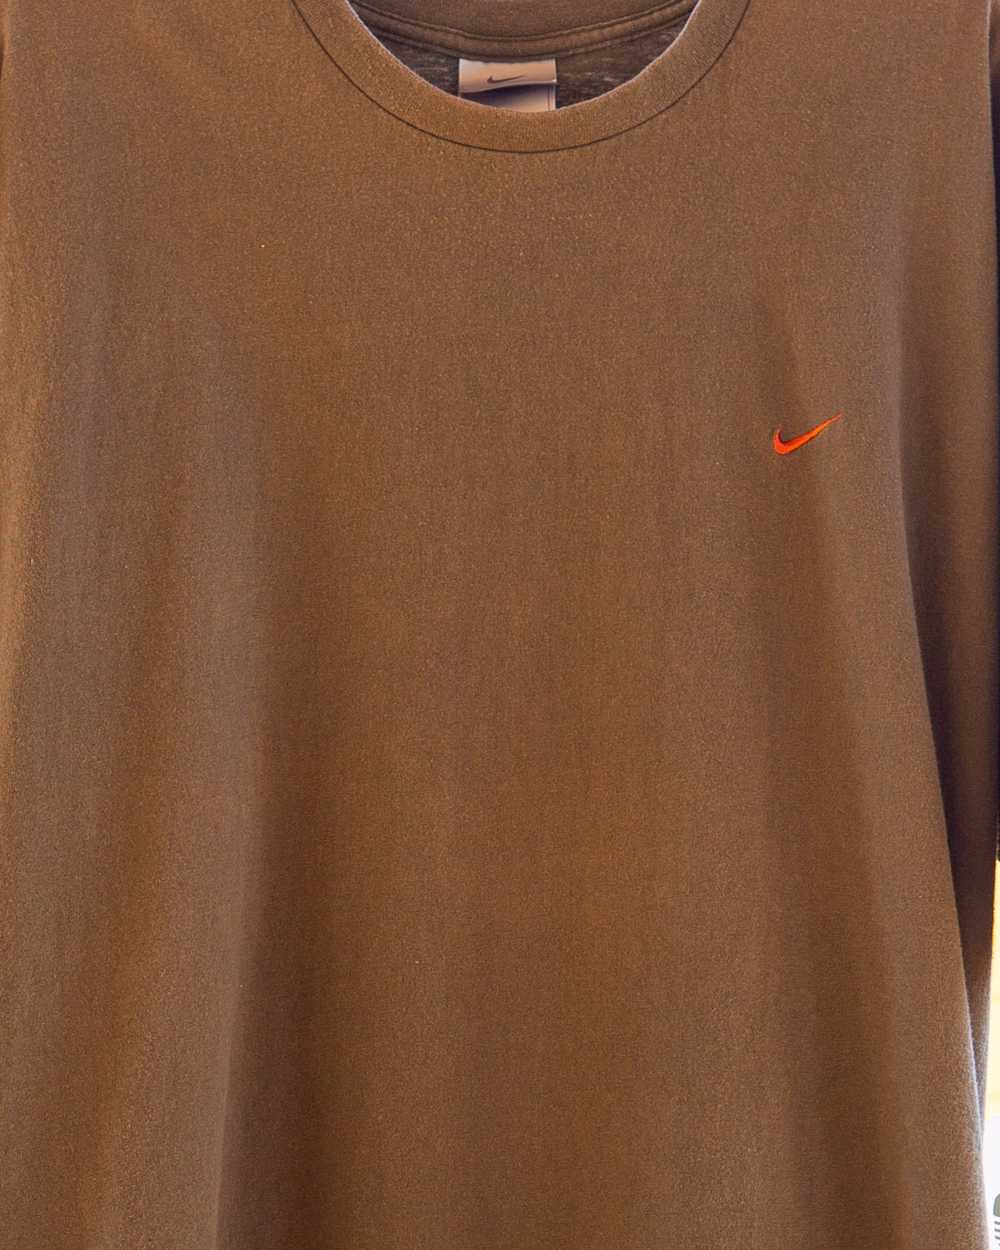 XXL Y2k Nike Check T-shirt - image 2